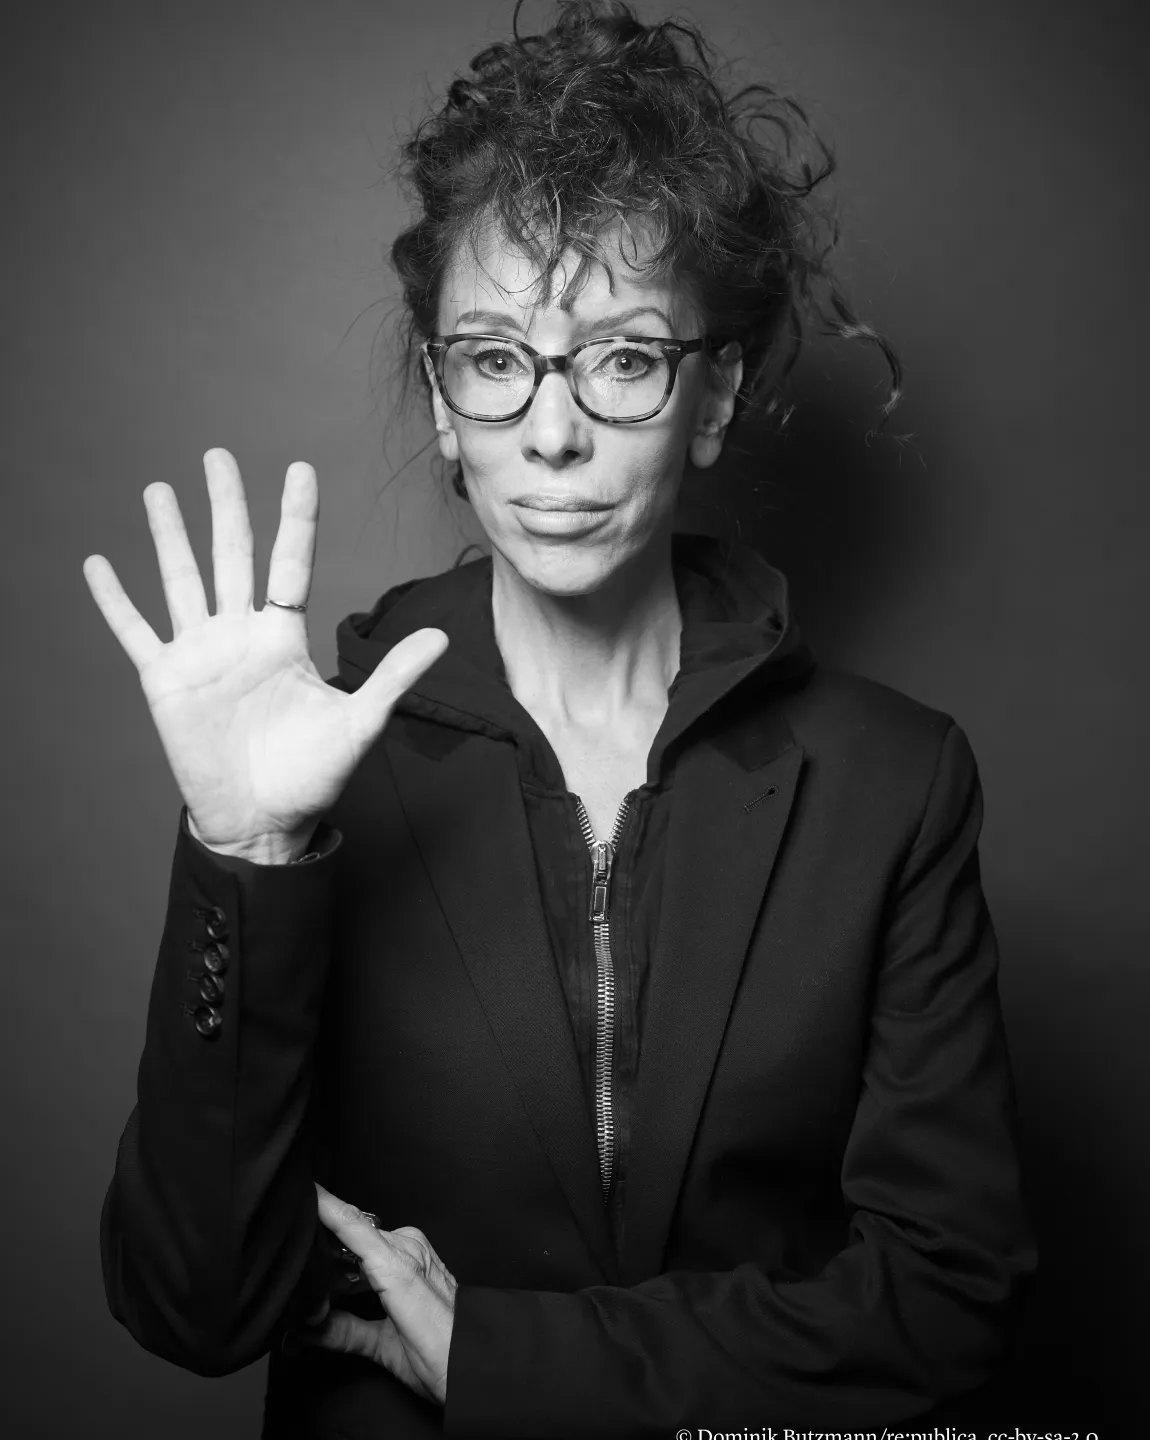 Autorin Sibylle Berg in einem schwarz-weiß Portrait